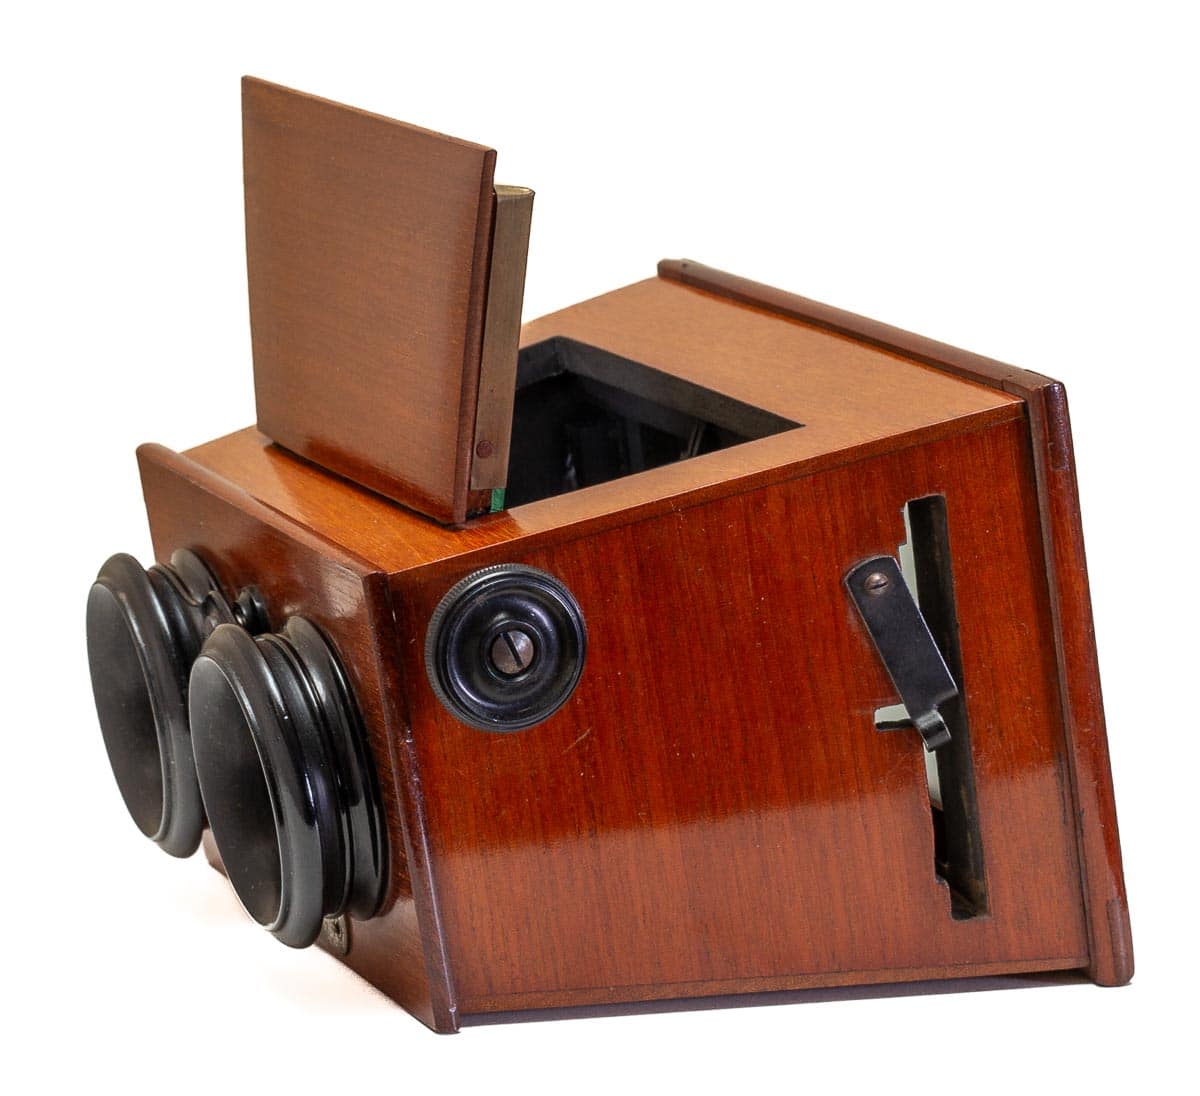 Stéréocycle Leroy stereoscope